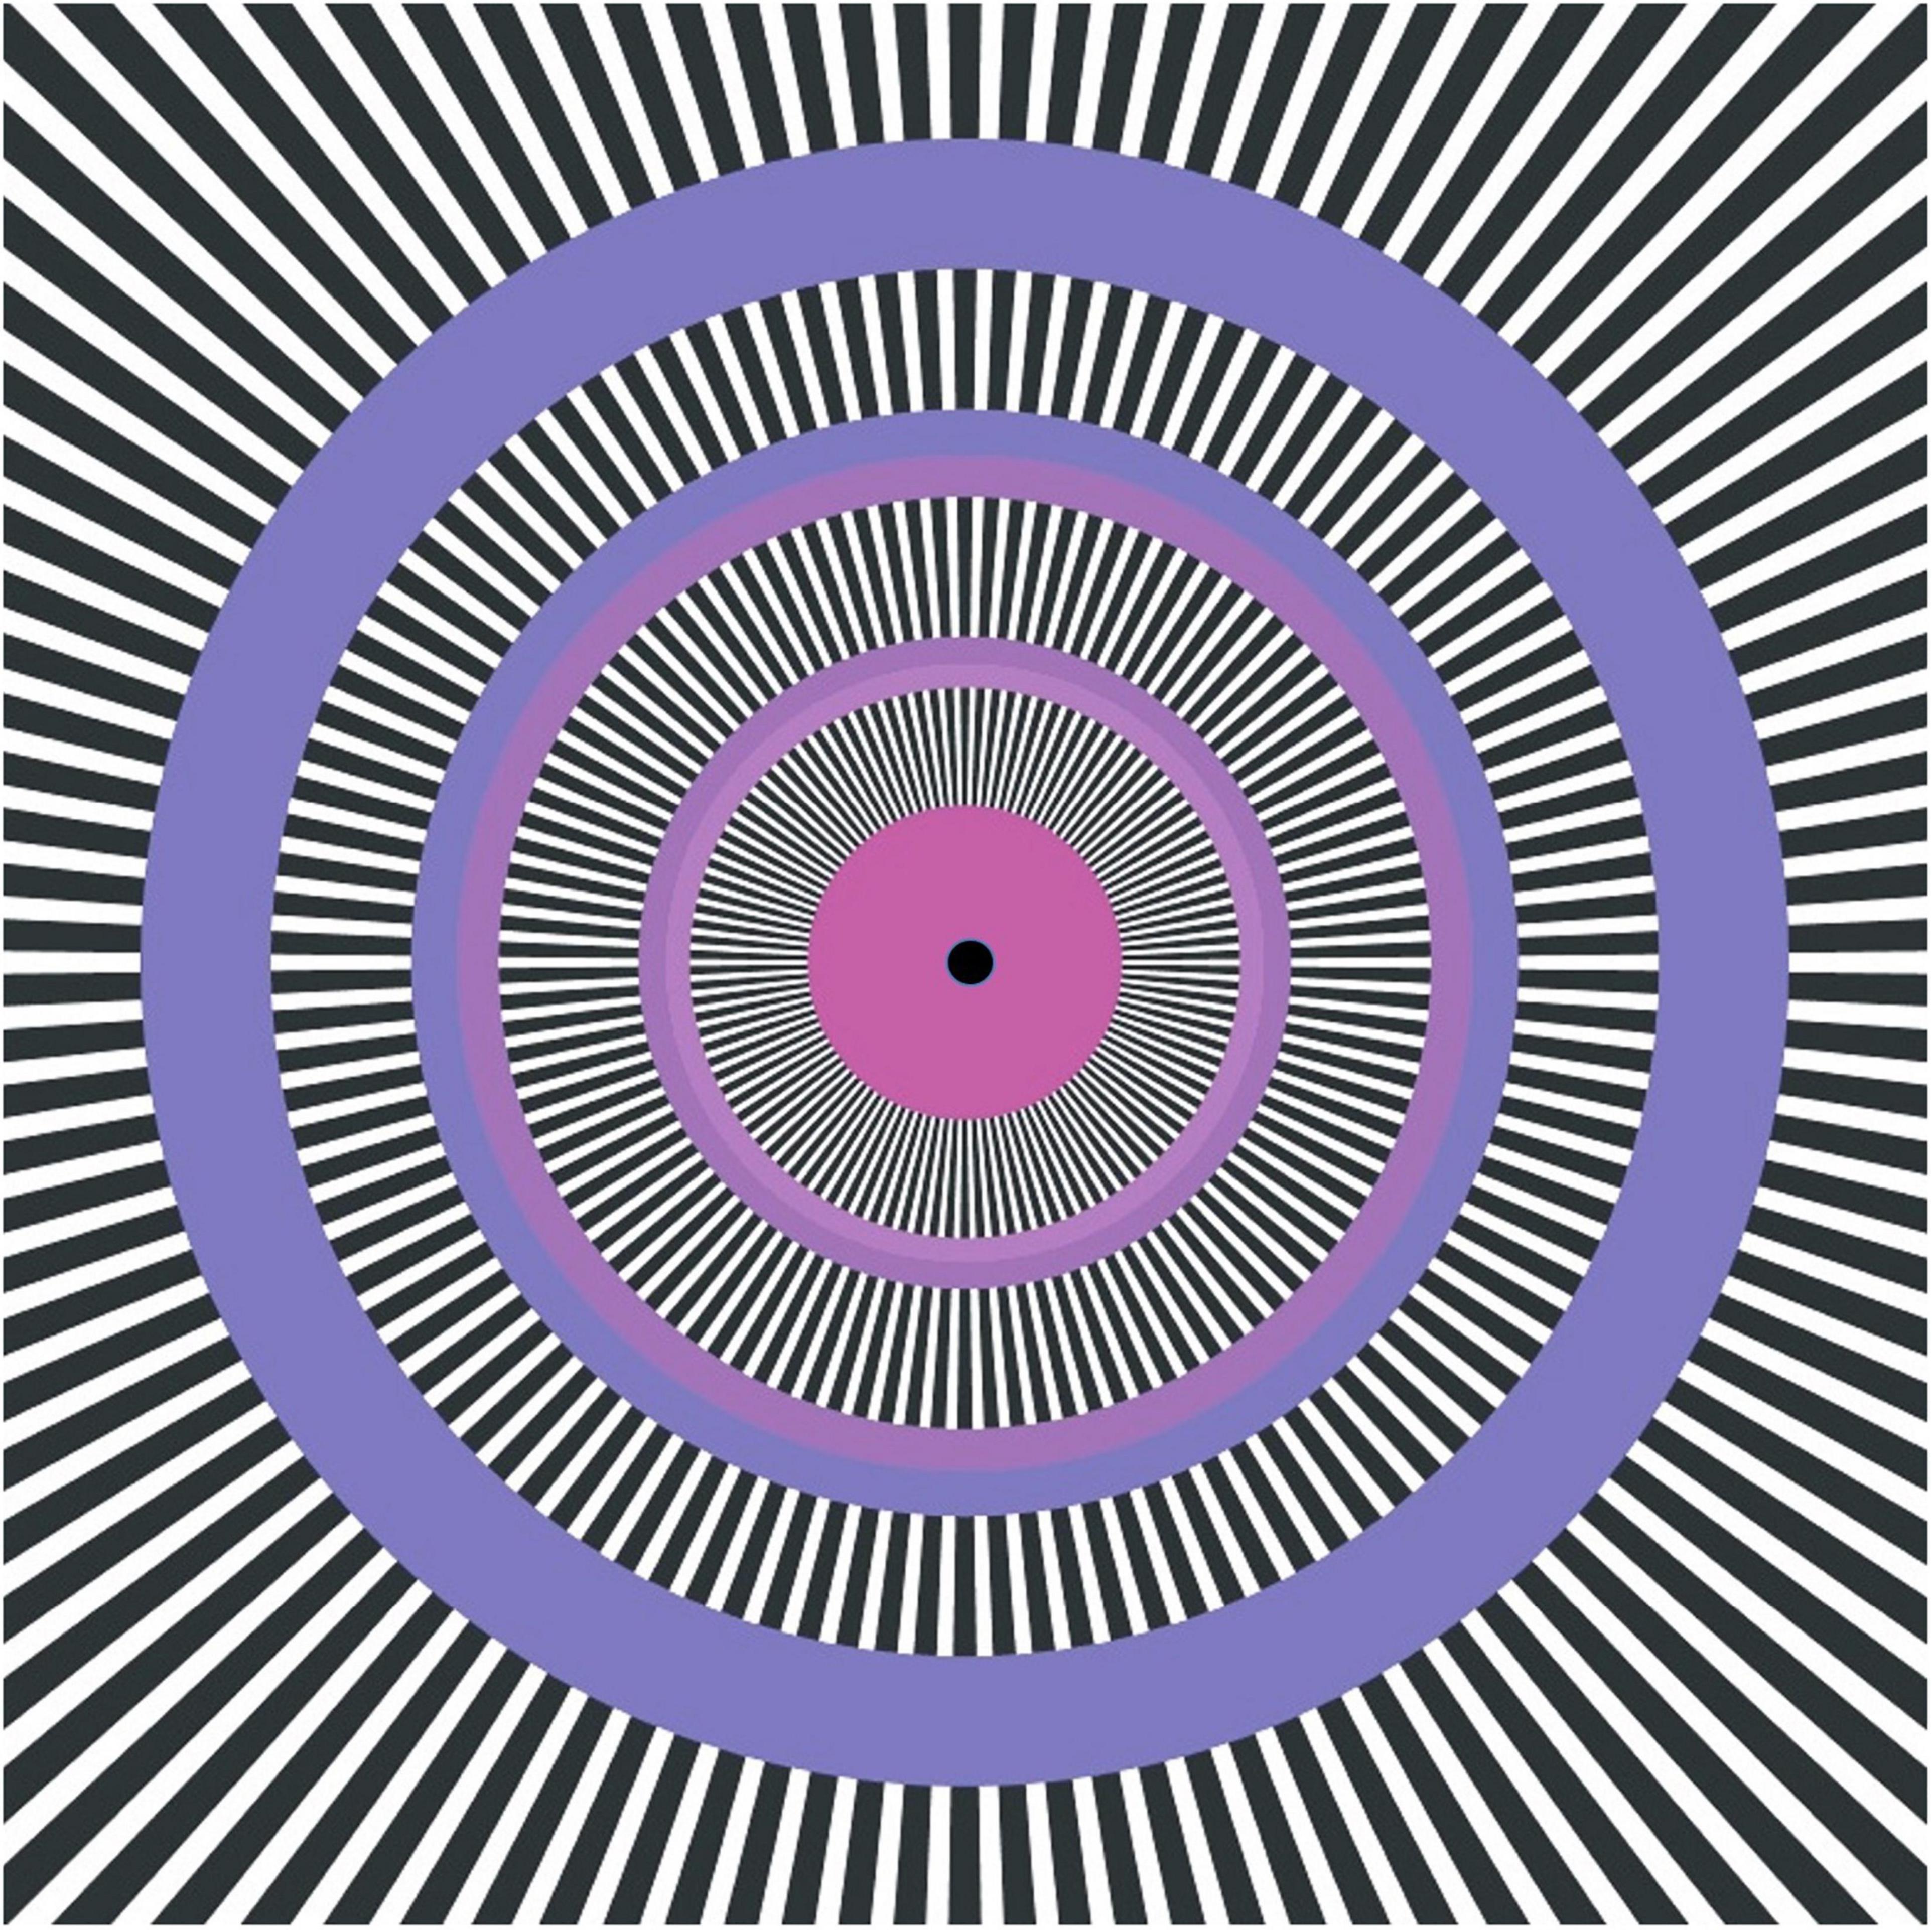 Движущиеся картинки для глаз. Акиоши Китаока. Иллюзия Энигма. Иллюзия Левиант. «Оптические иллюзии» (Автор Джейкобс ПЭТ).